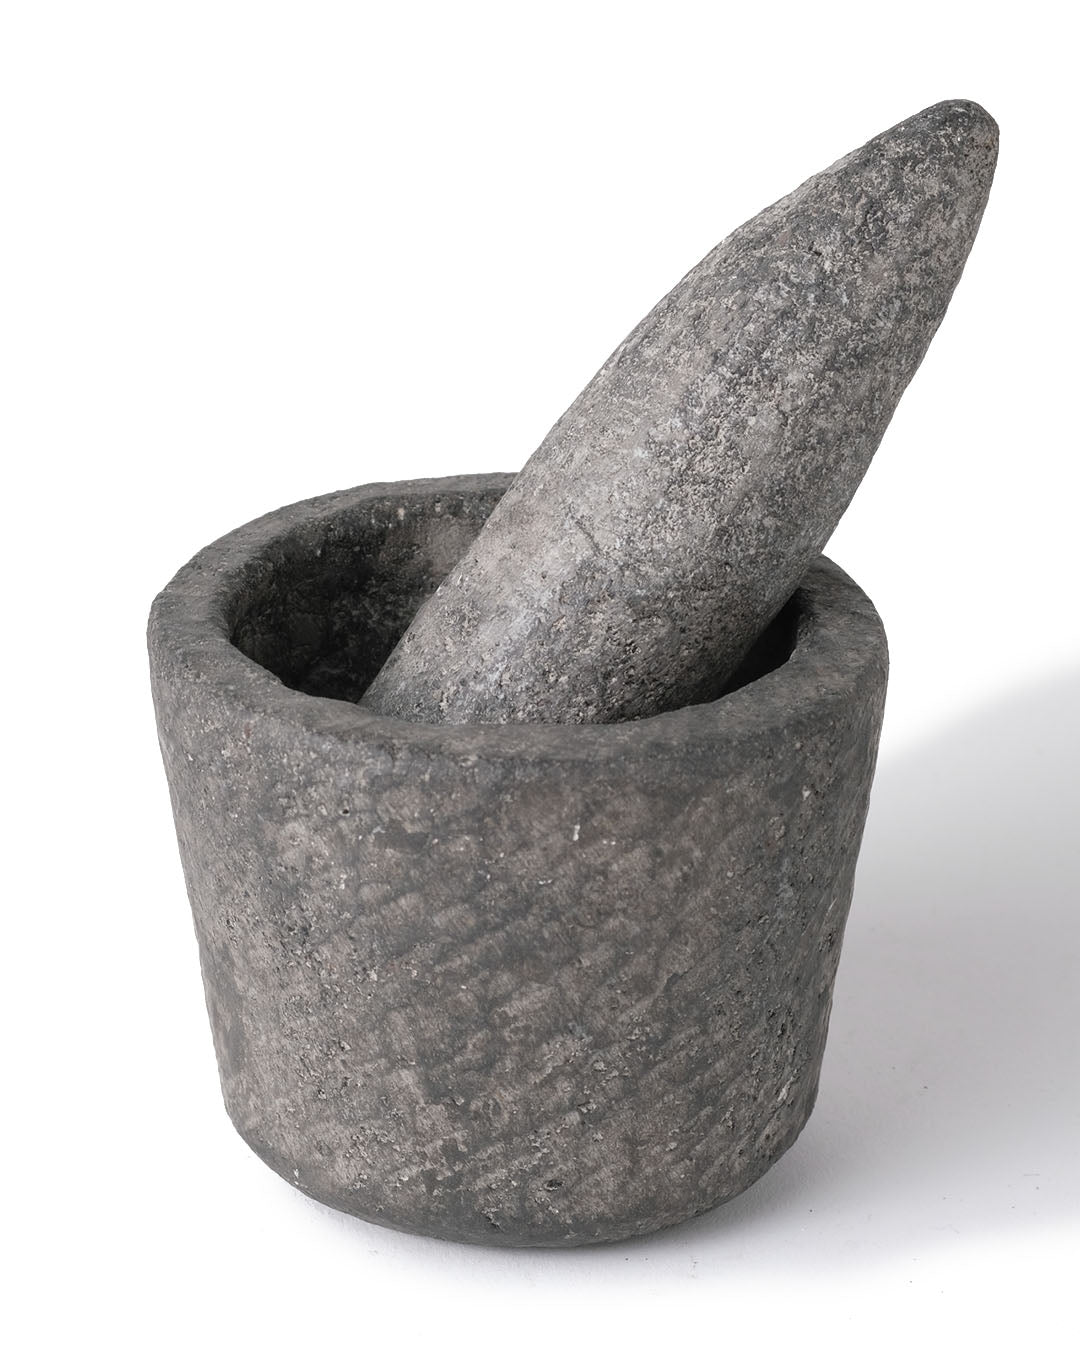 Mortero de cocina de piedra de rio natural Kepajen con palo machacador de molienda, esculpido a mano, disponible en 2 medidas, origen Indonesia